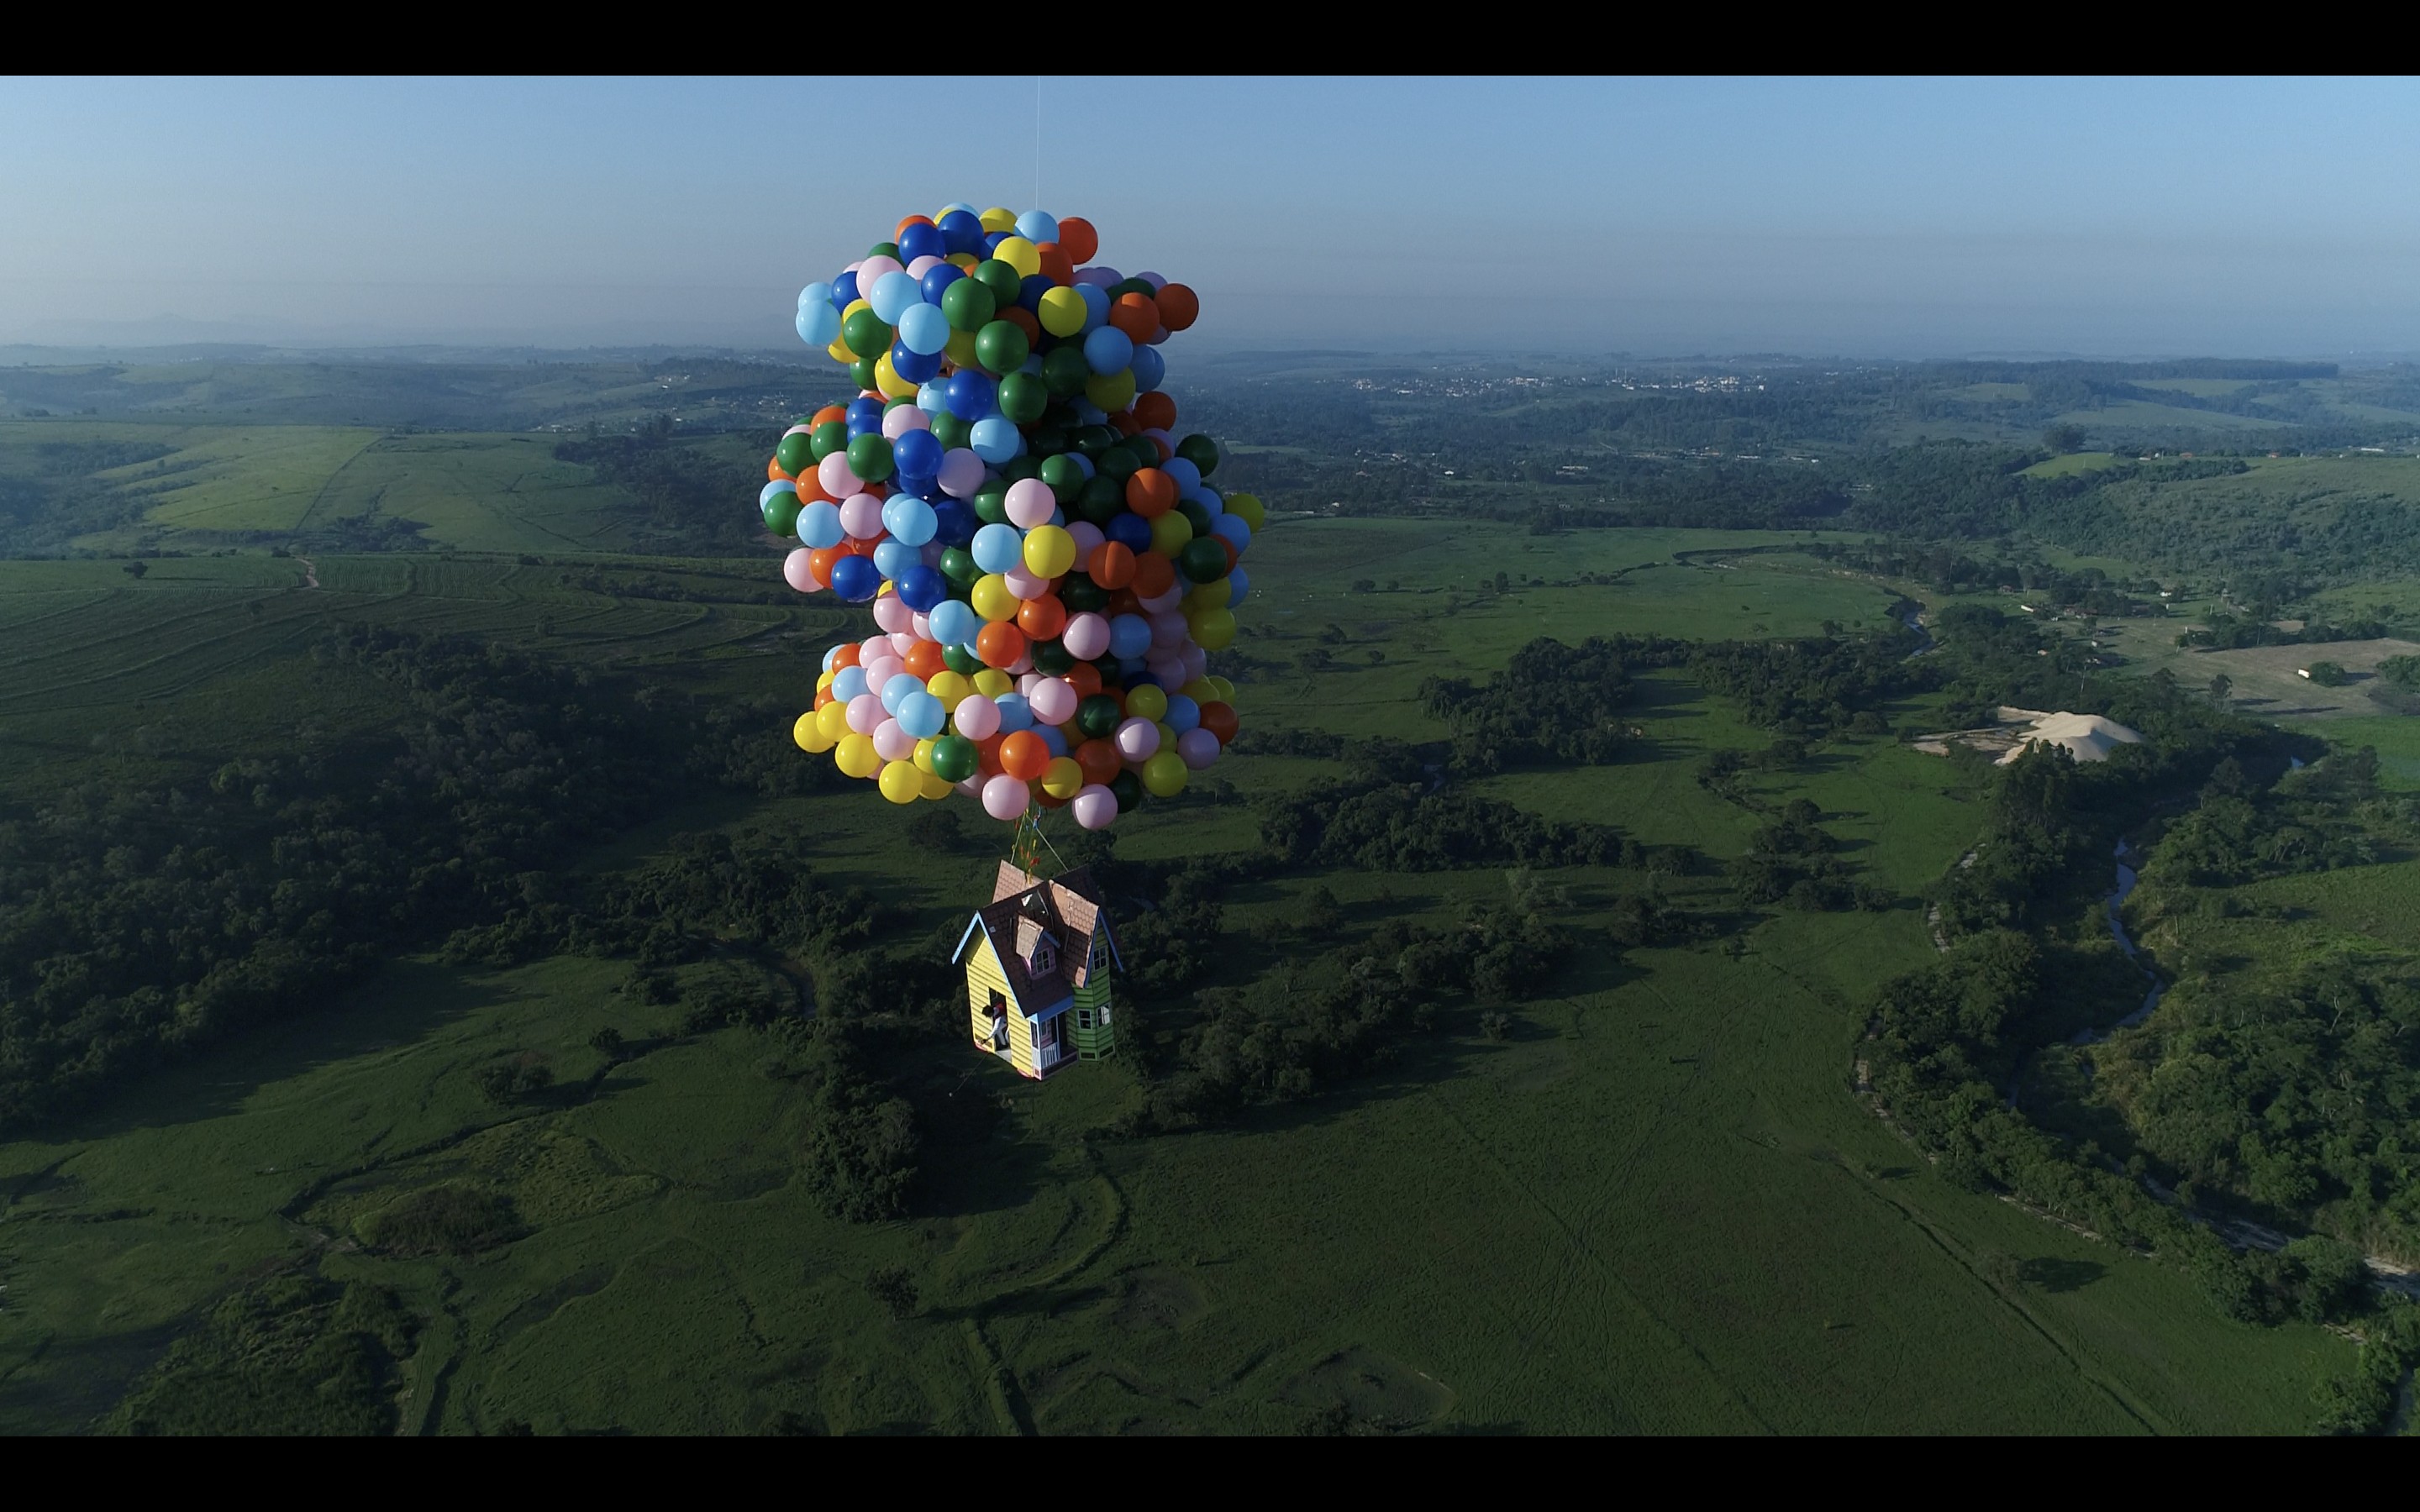 O paraquedista Luigi Cani realizou o sonho de Up - Altas Aventuras (Foto: Divulgação)